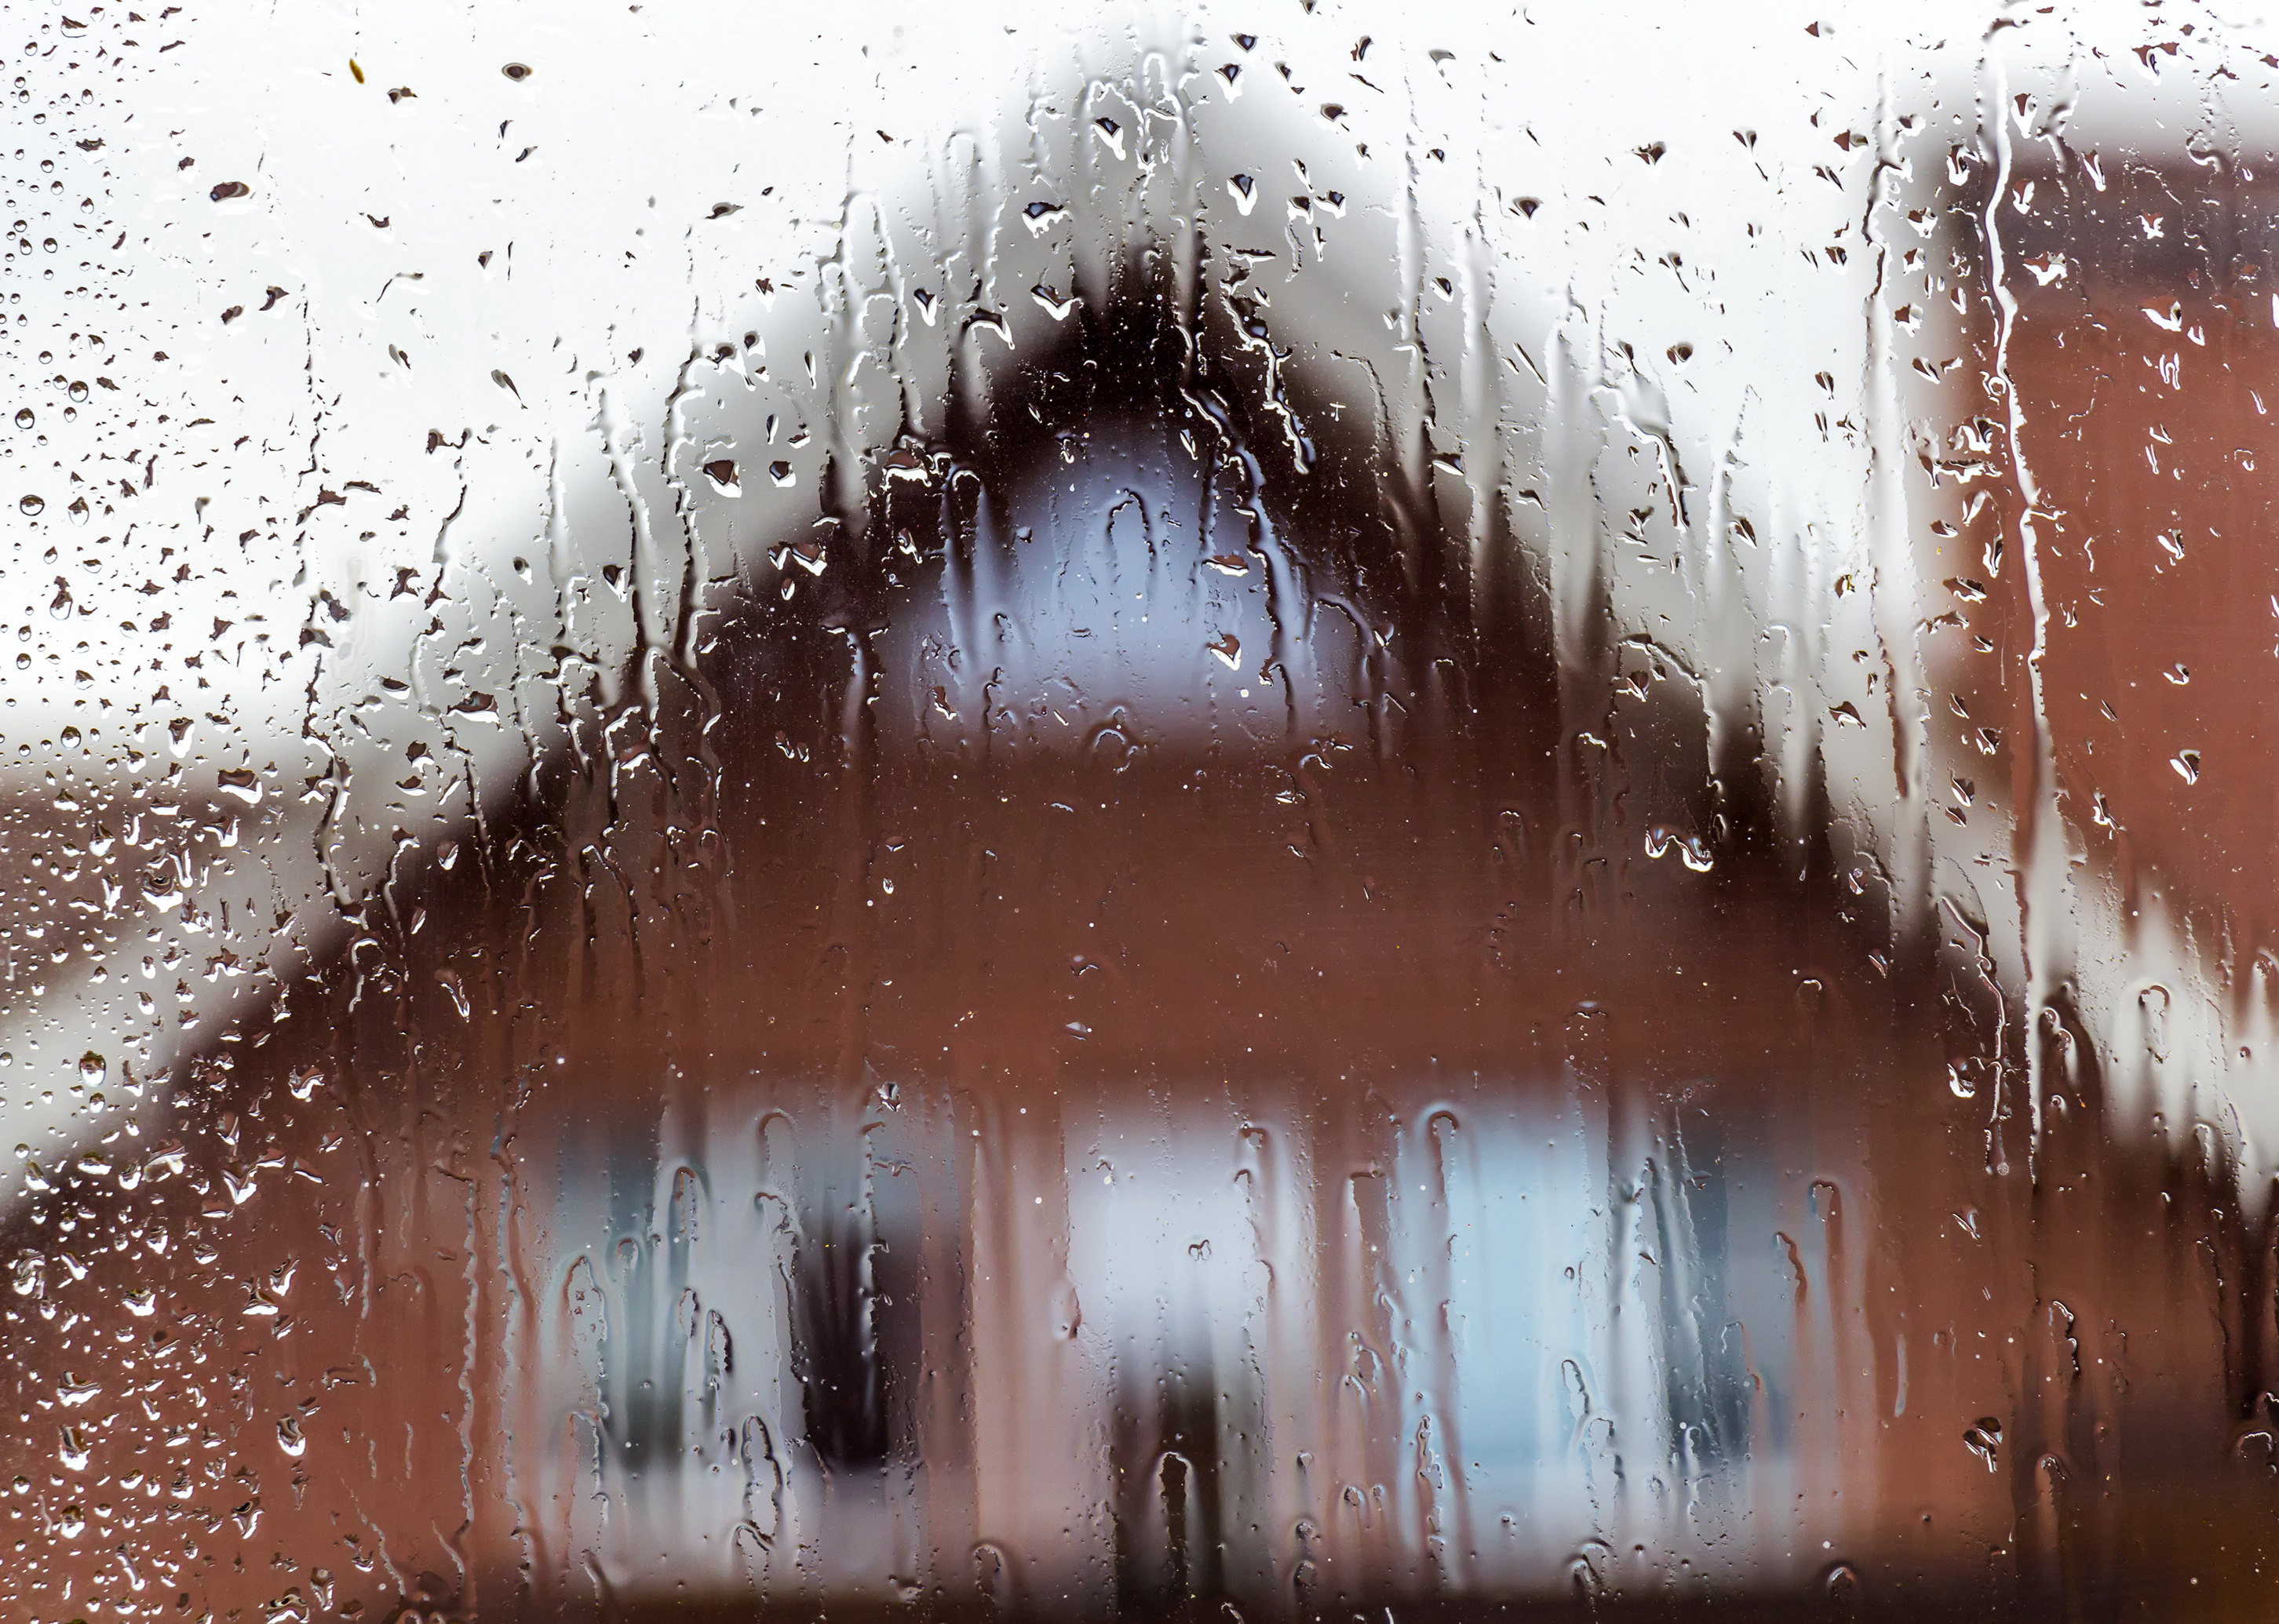 wet house through lens